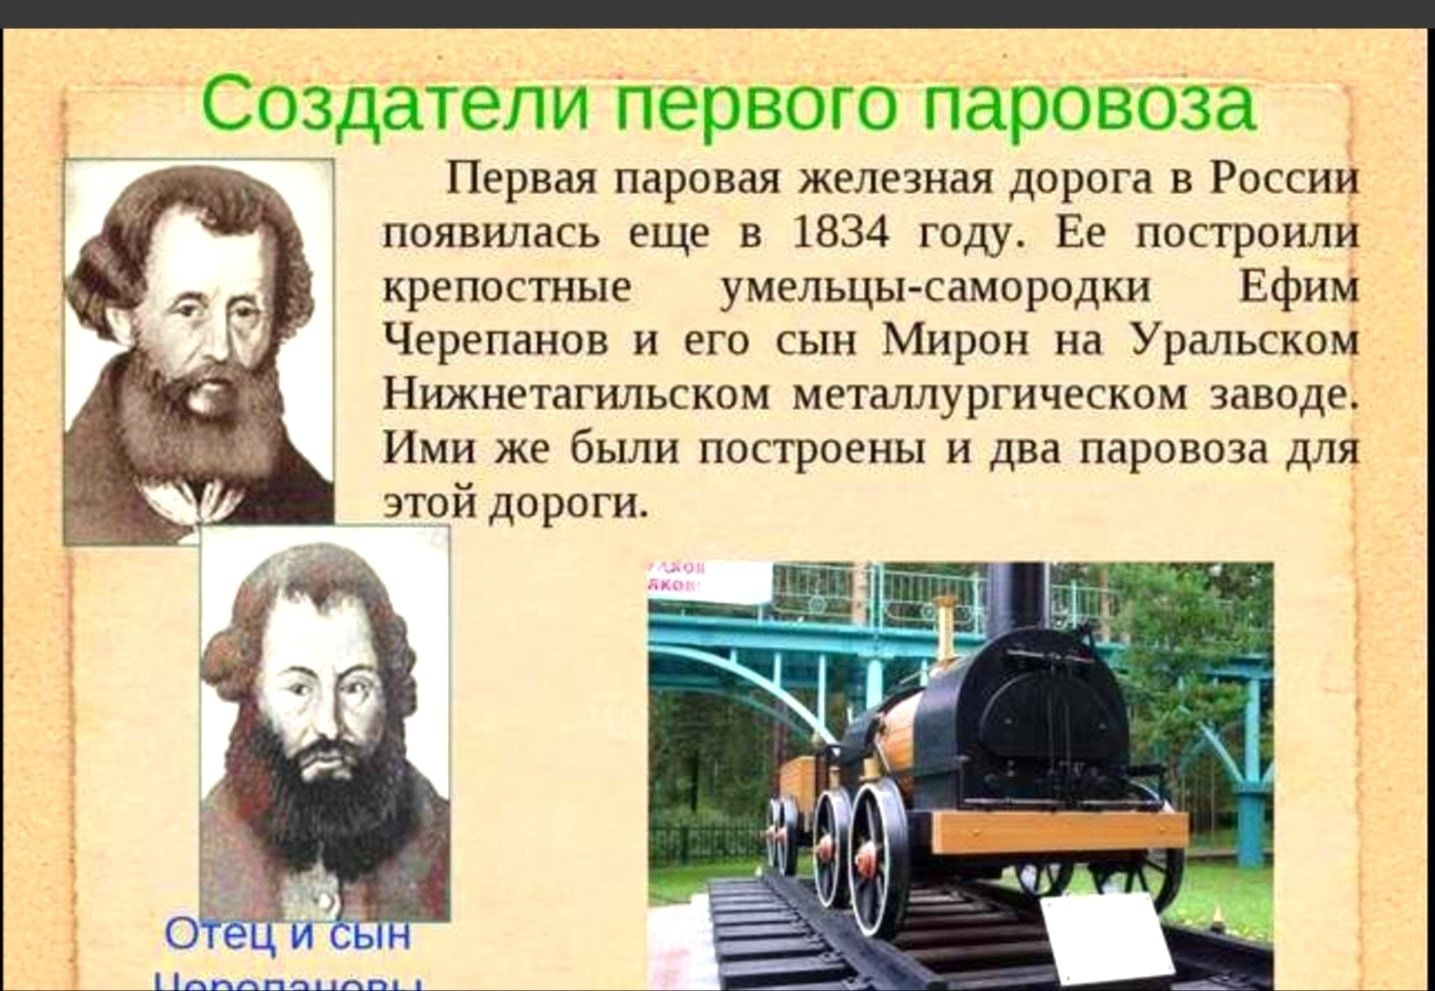 Первый в мире купил. Первый паровоз в мире и его изобретатель. Первый изобретатель паровоза в России. Черепановы создатели первого российского паровоза. Изобретатели паровоза Черепановы.